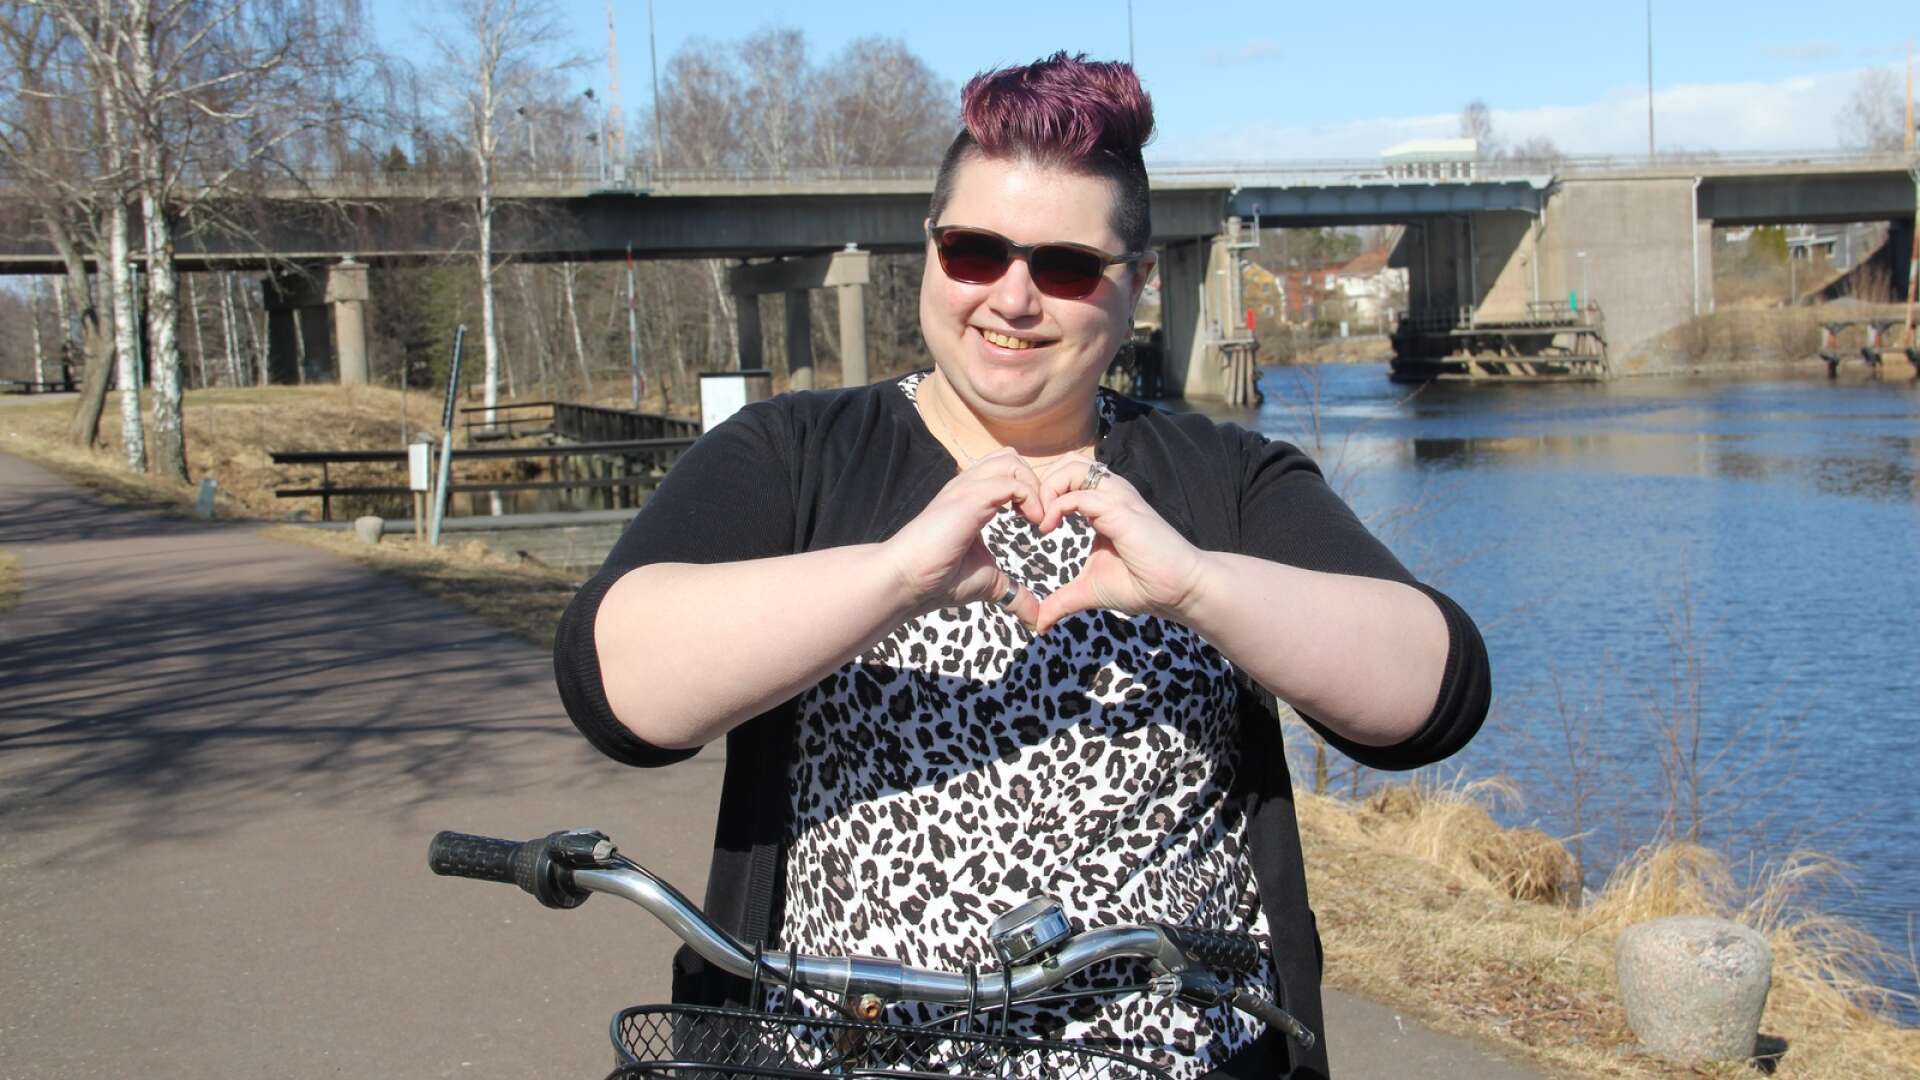 Claudia Oskarsson var en kommunens ”vintercyklare” i ett pilotprojekt för att öka pendlingen med cykel. Hon är mycket positiv till pilotprojektet och hoppas att det får en fortsättning.